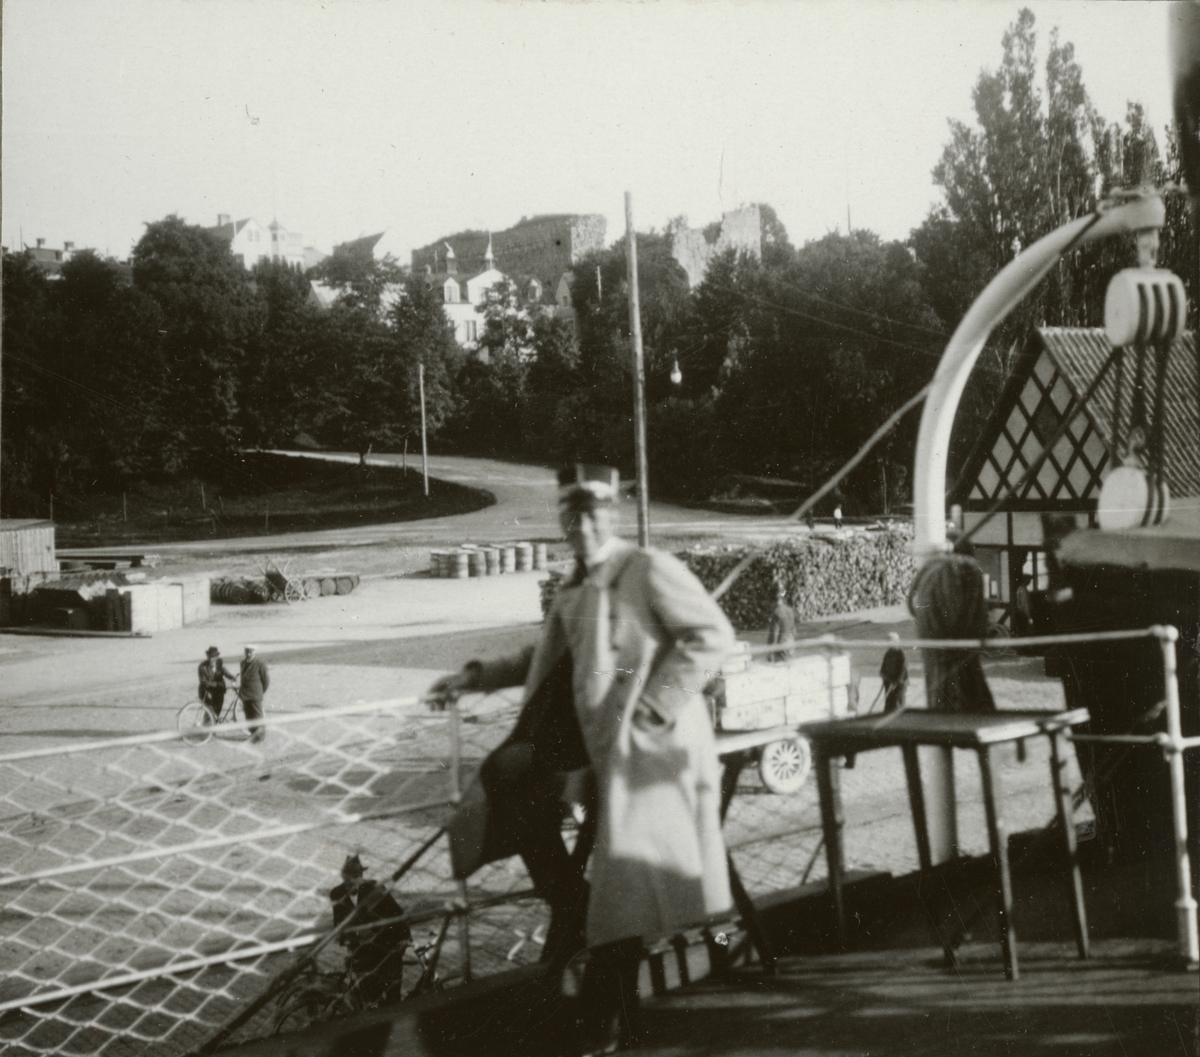 Text i fotoalbum: "I 5:s officersövningar på Gotland den 2.-10. juli 1924".